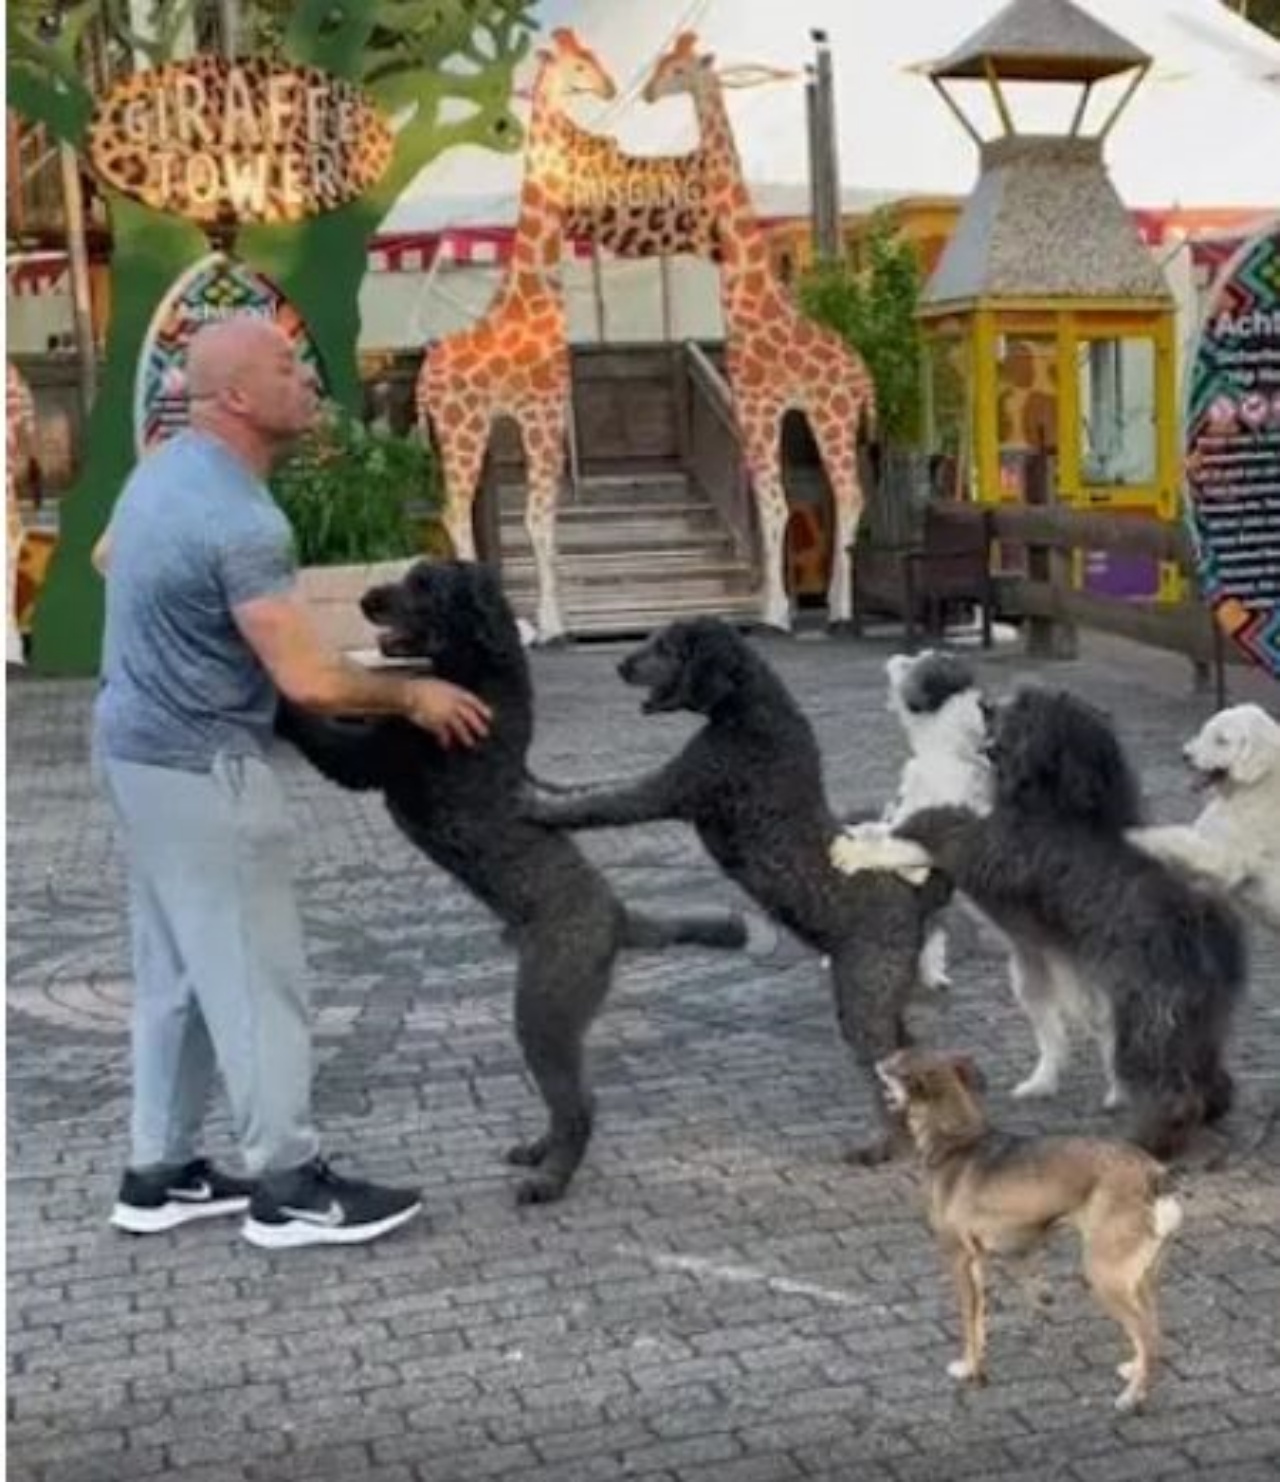 Un uomo addestra dei cani